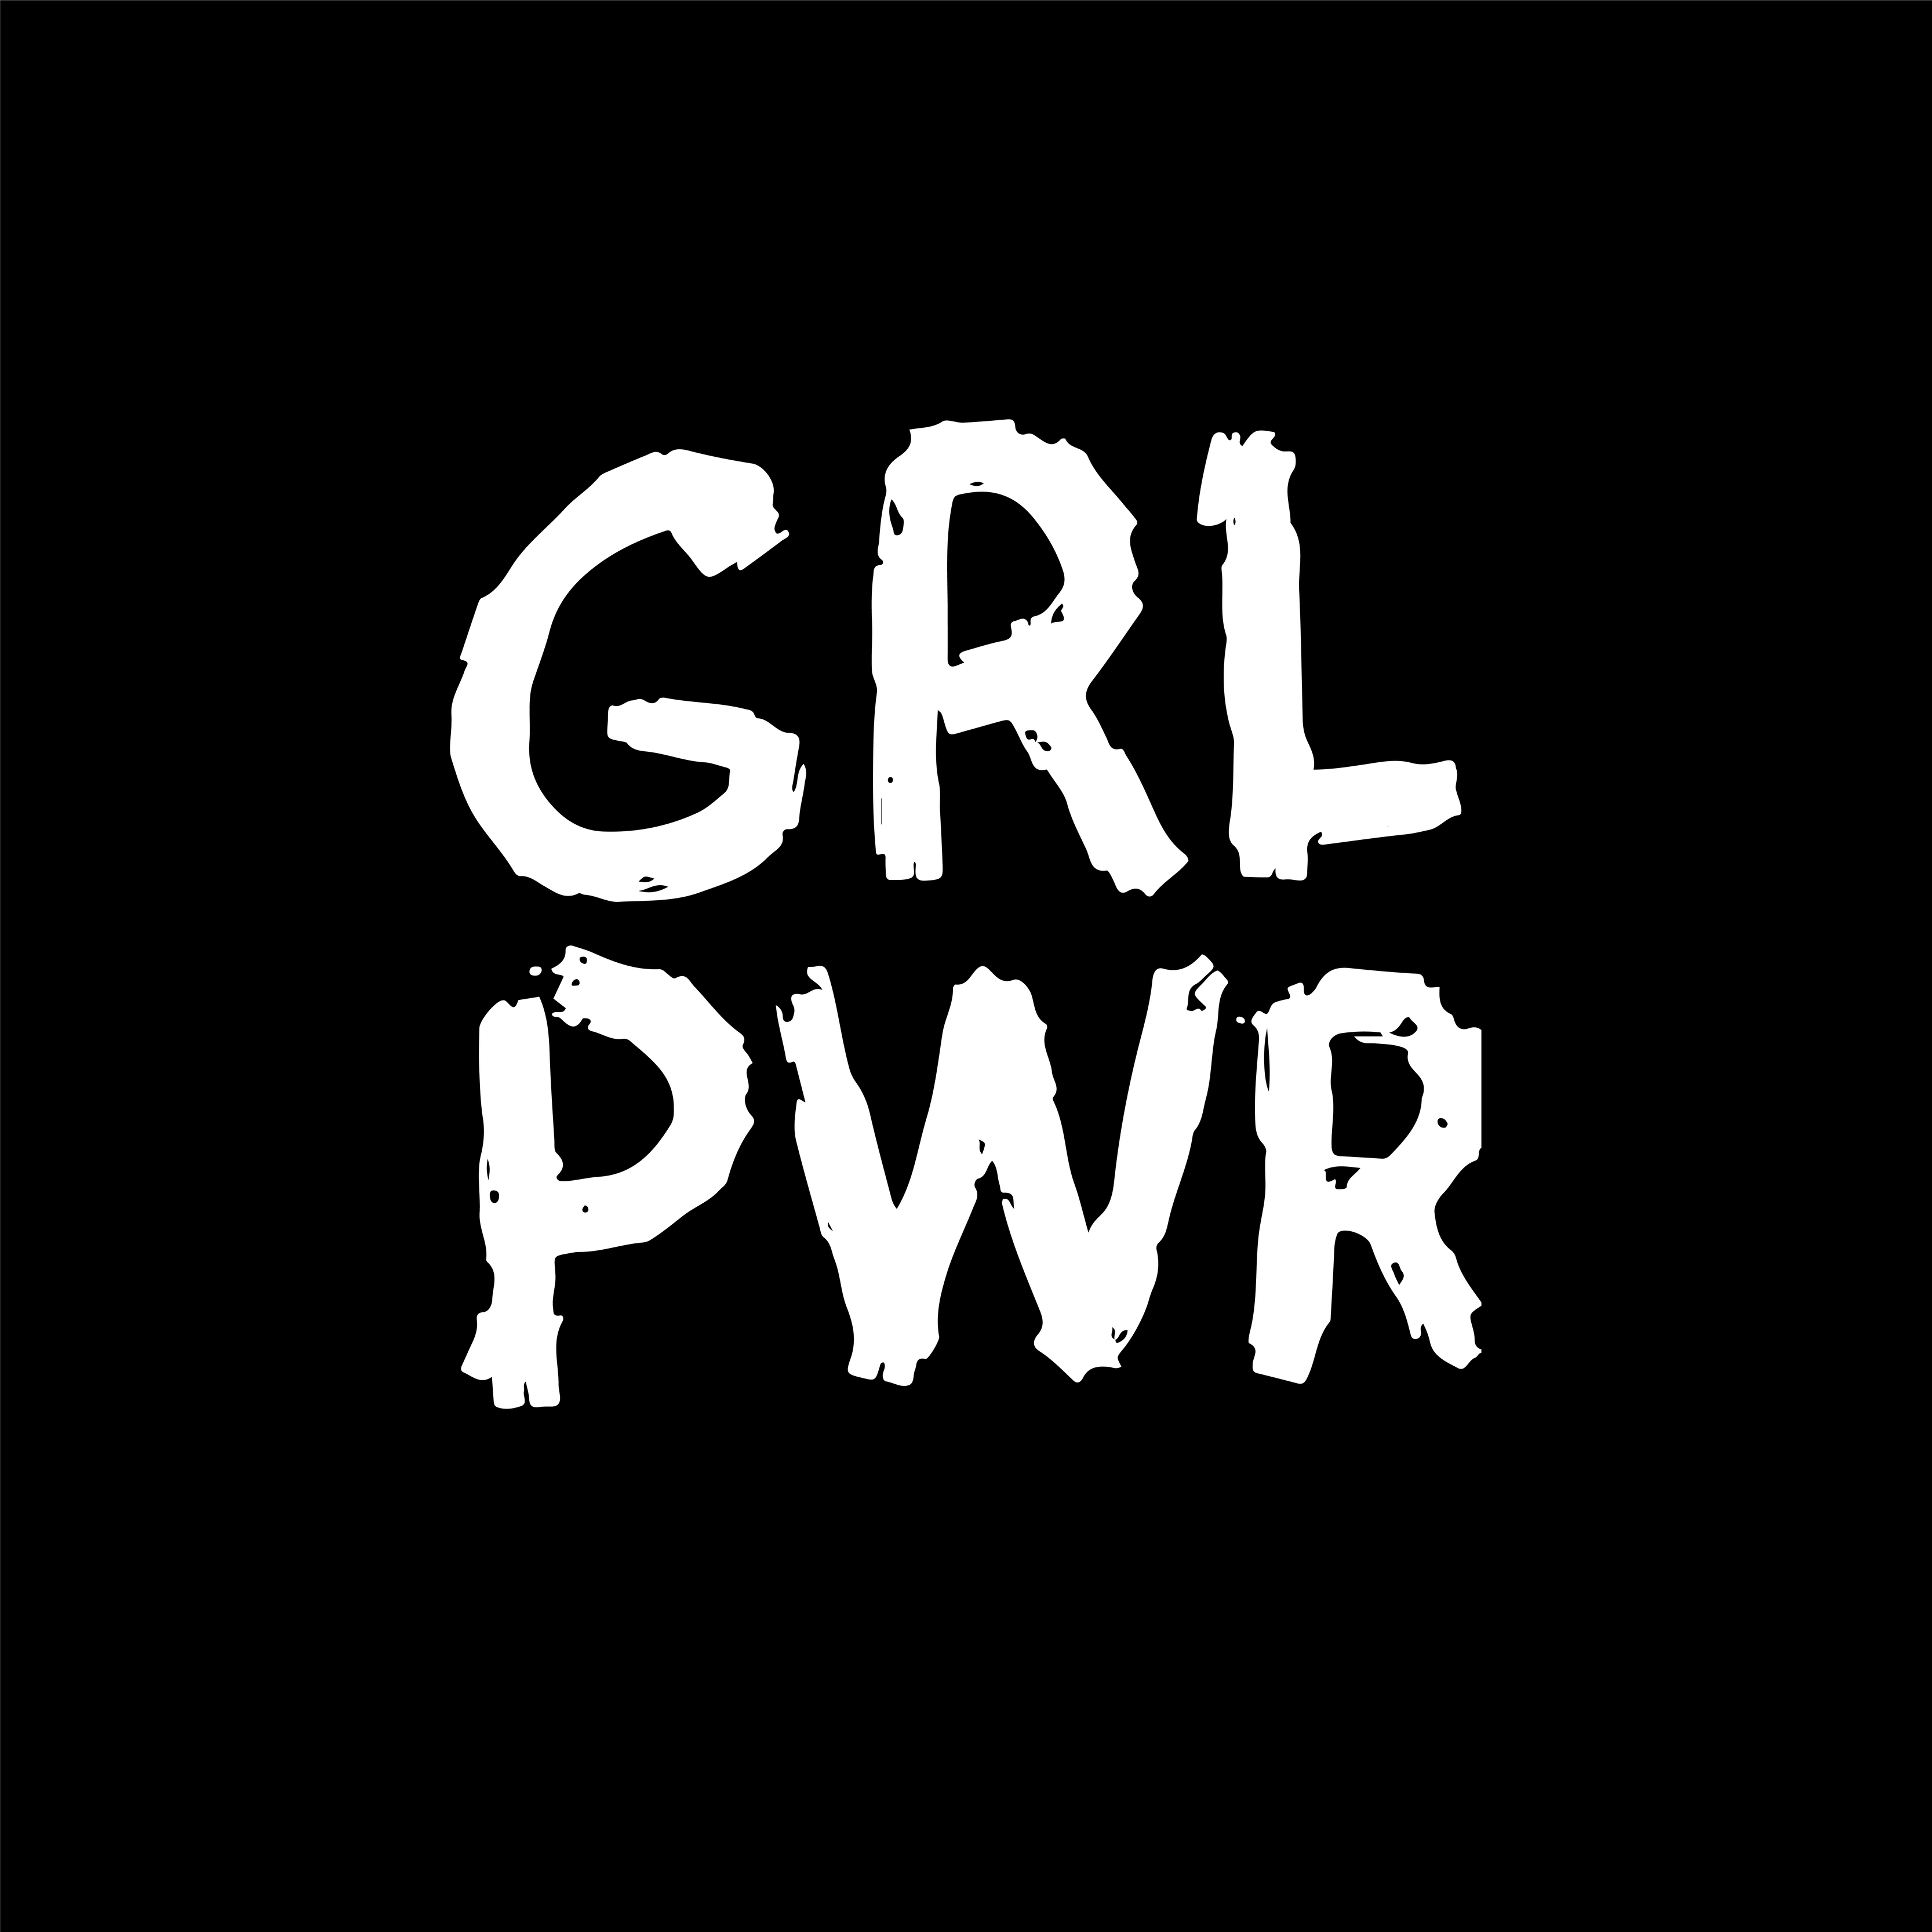 Trích dẫn ngắn GRL PWR, hình minh họa nắm tay đáng yêu - Short quote, girl power illustration: GRL PWR: Nữ quyền không phải là một từ mới, nhưng hình ảnh nắm tay đáng yêu kèm với trích dẫn GRL PWR như một lời nhắn gửi sức mạnh cho bạn gái trẻ. Hãy khám phá bộ sưu tập hình minh họa này và truyền đạt thông điệp của bạn đến thế giới.